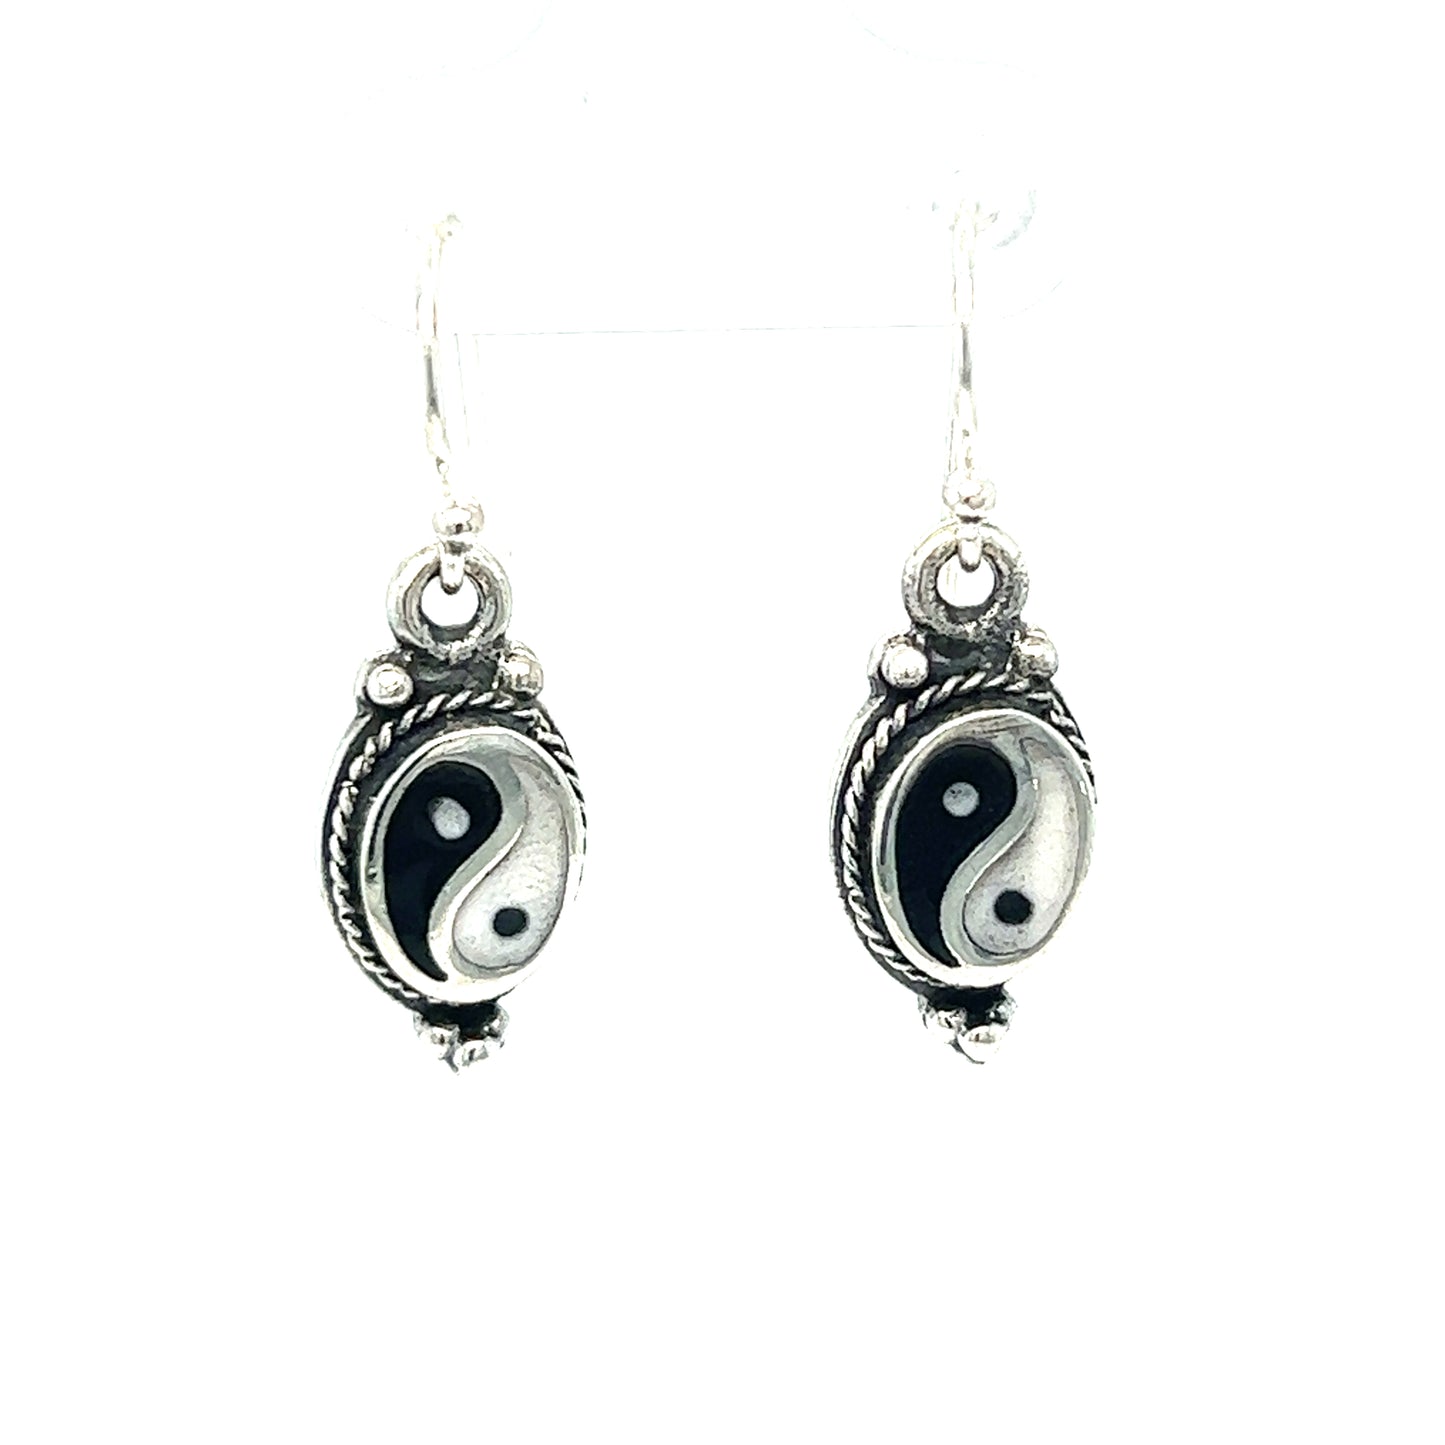 Black and white Yin-Yang earrings with rope border symbolizing balance.